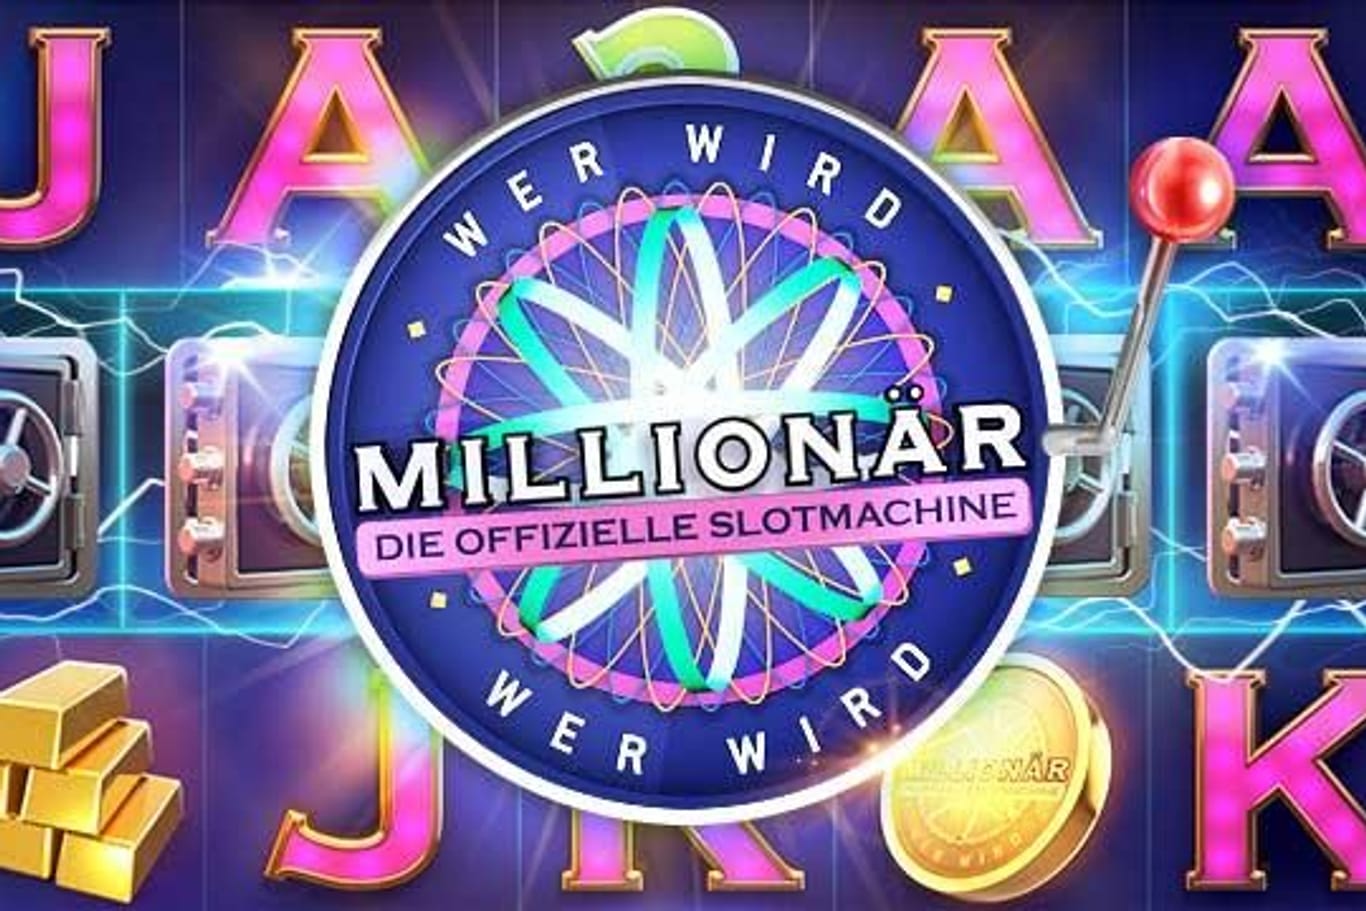 Wer wird Millionär? (Quelle: Whow Games)